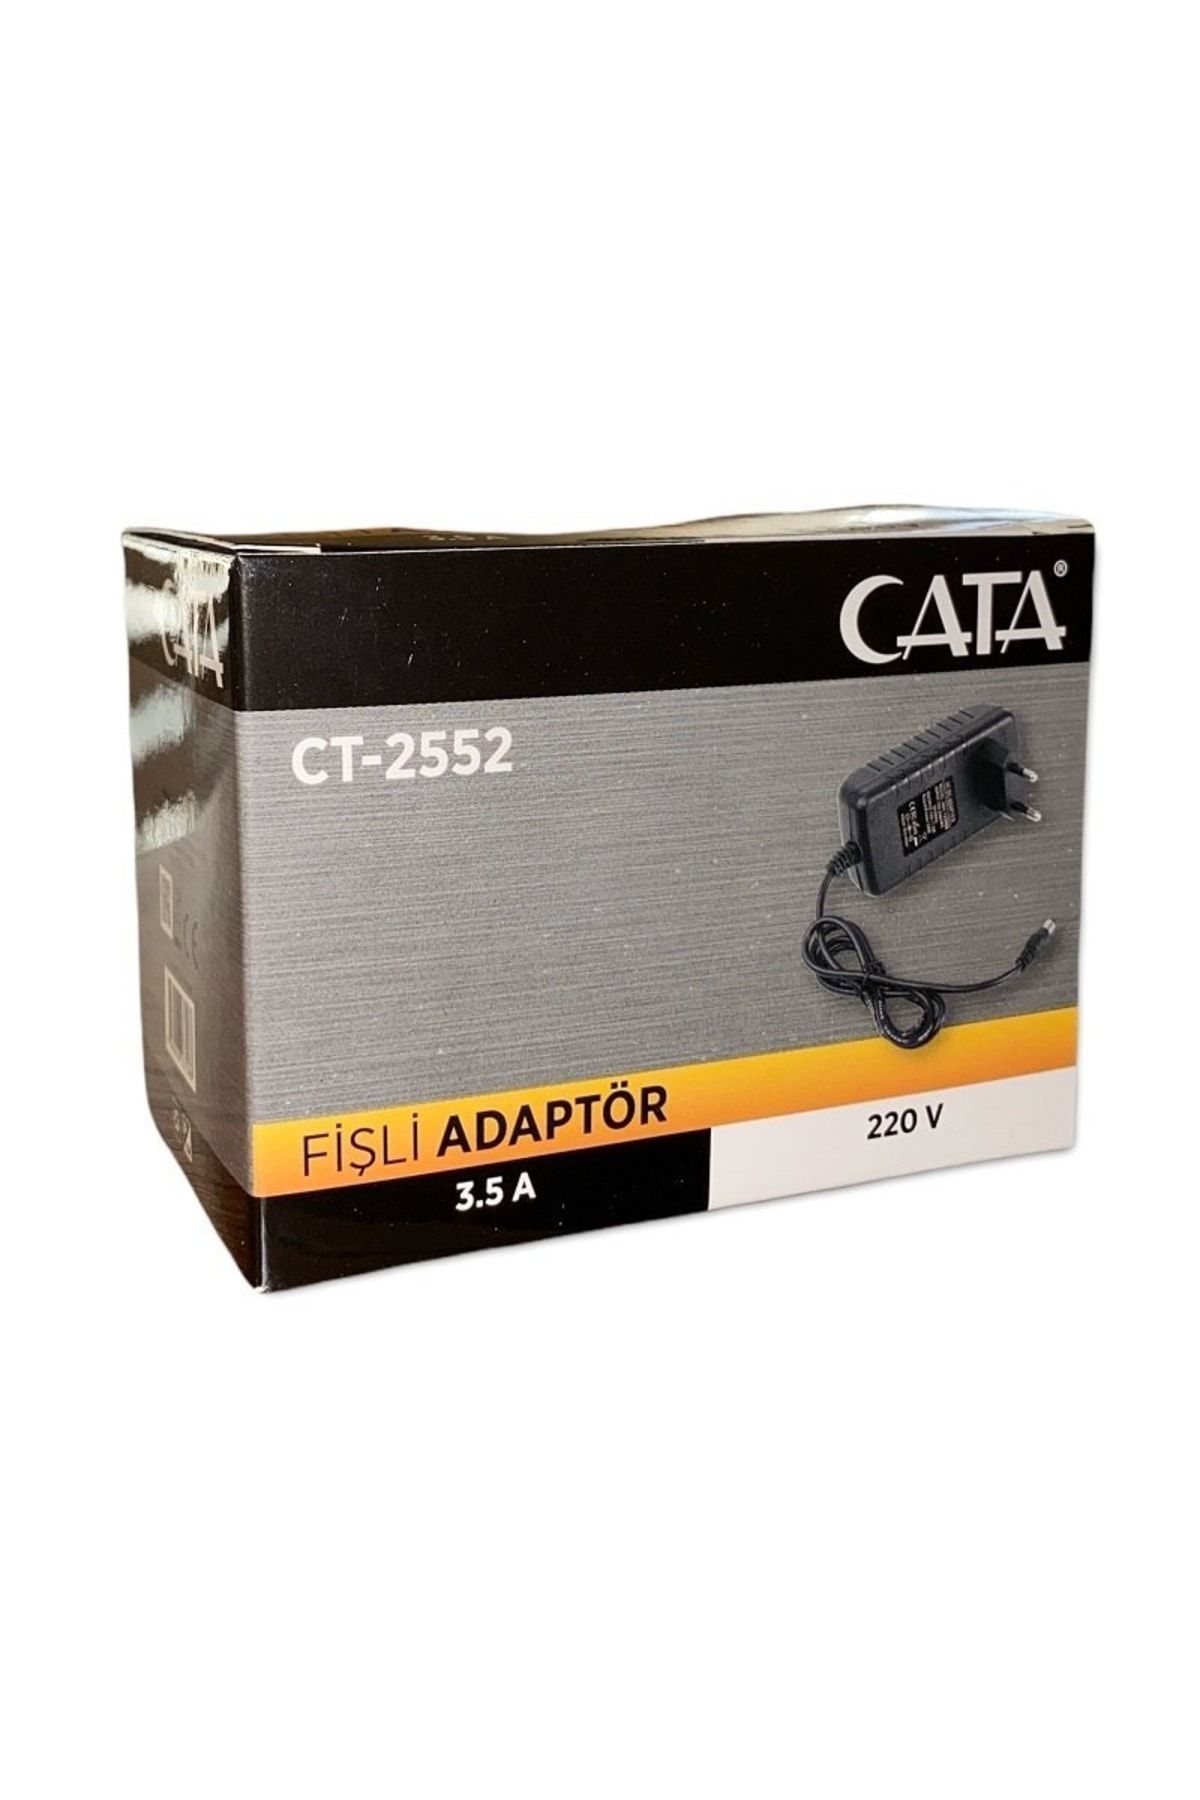 Cata Ct-2552 3.5 amper Fişli Adaptör